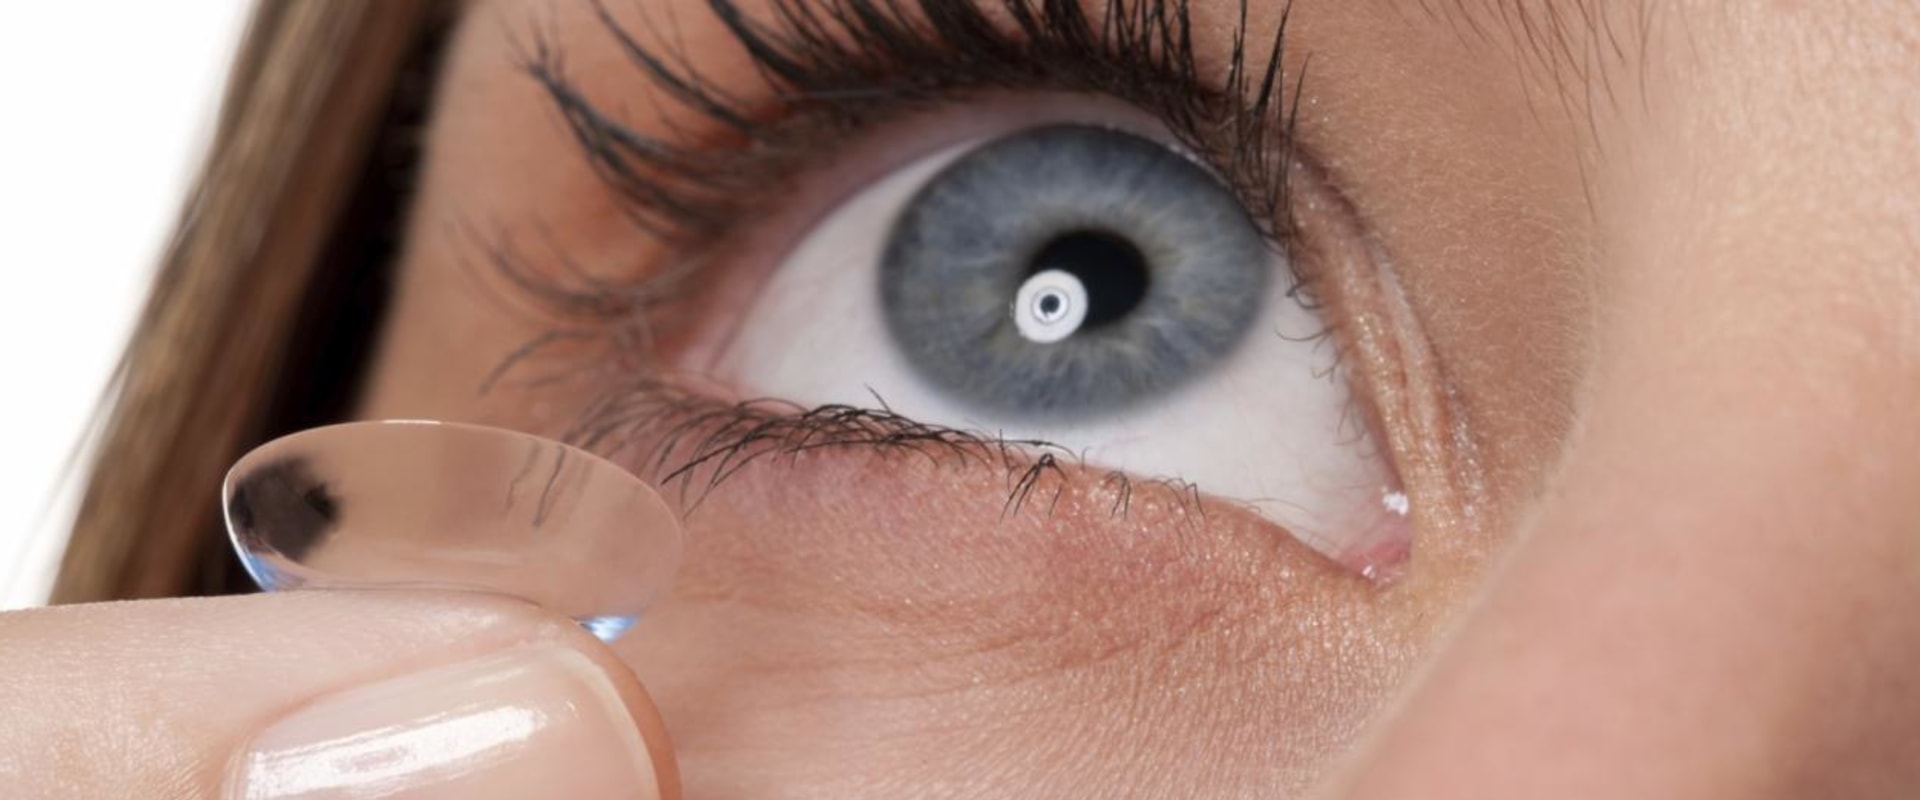 Qué pasa si se mojan los lentes de contacto?